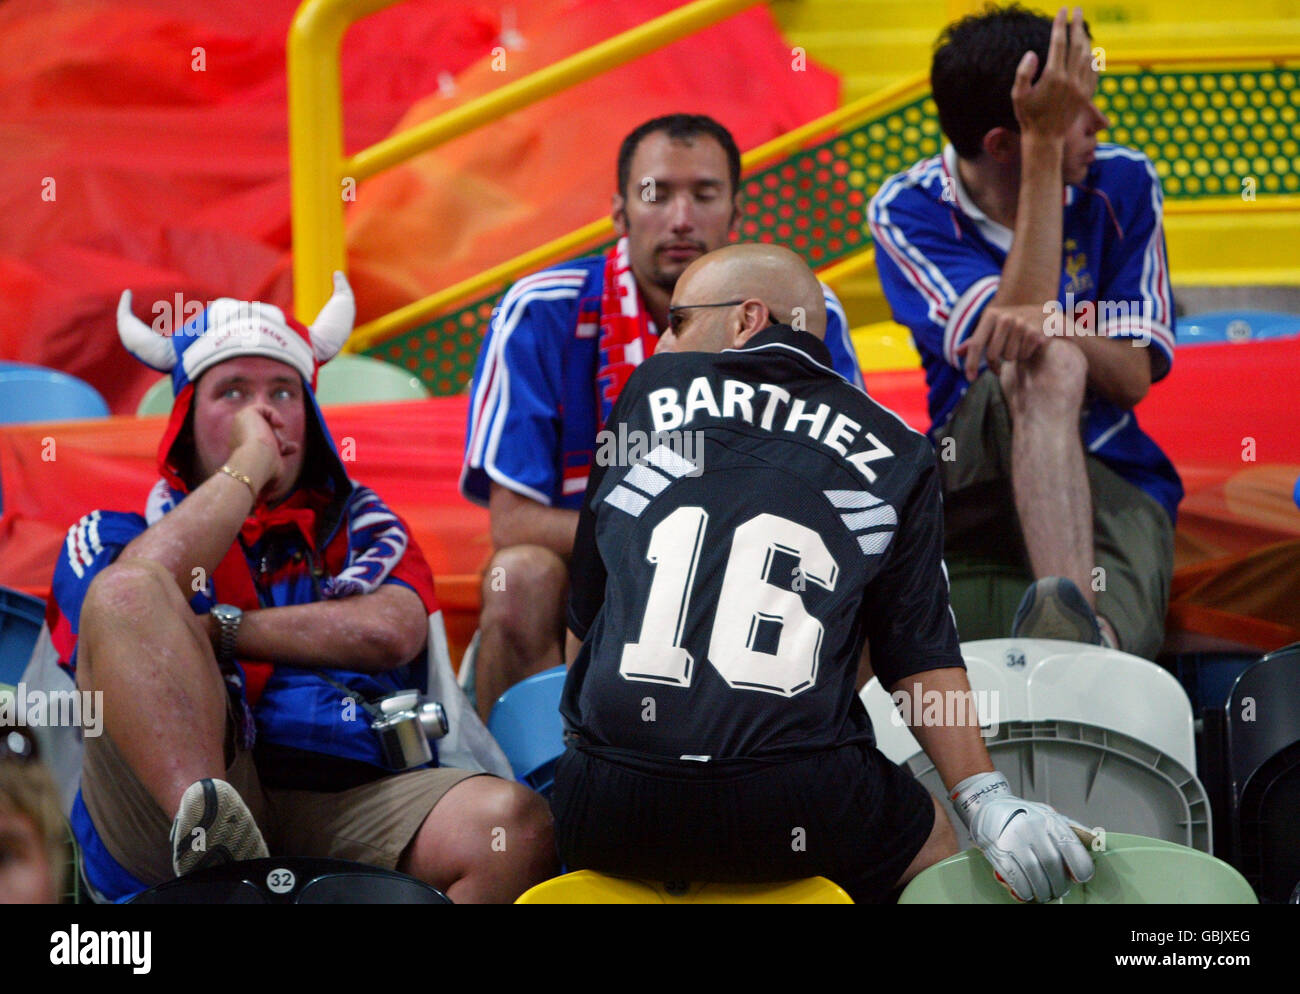 Football - UEFA European Championship 2004 - Quarter finals - France / Grèce.Un Fabian Barthez ressemble à une foule de fans français découragés après que la France ait été éliminée de l'Euro 2004 après avoir perdu en Grèce 1-0 Banque D'Images